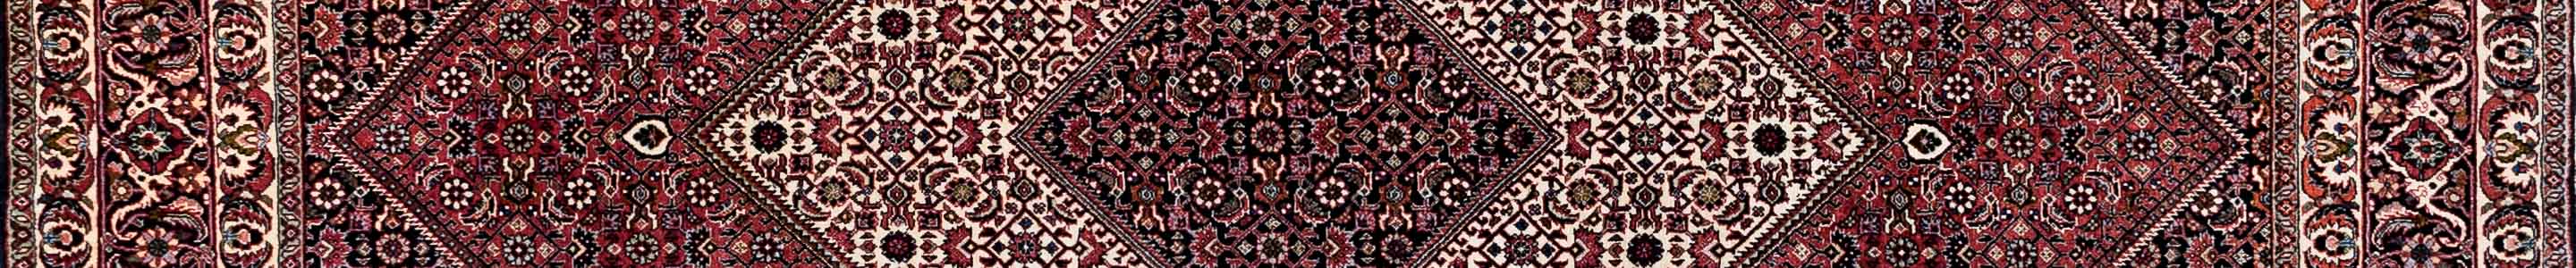 Bidjar Persian Carpet Rug N1Carpet Canada Montreal Tapis Persan 3600